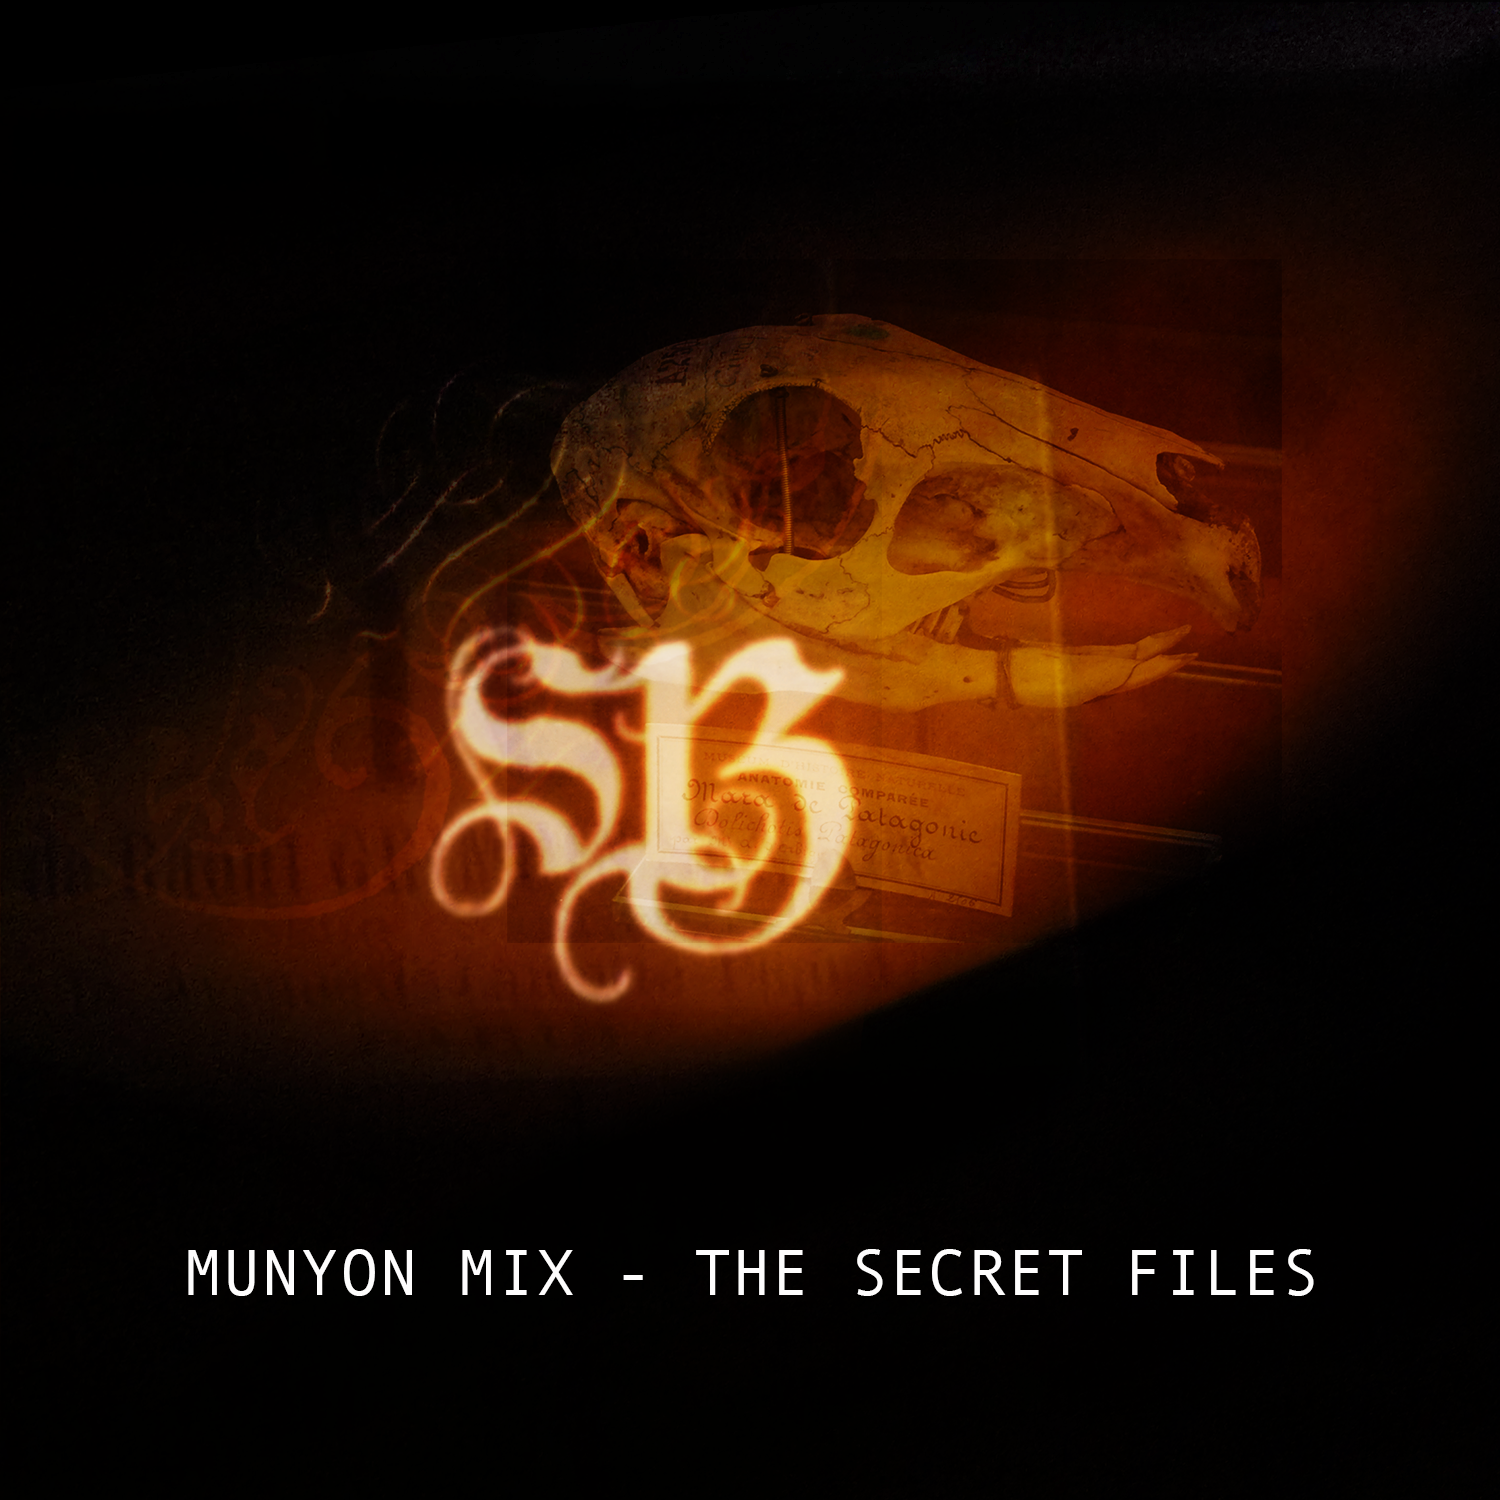 The Munyon Mixes